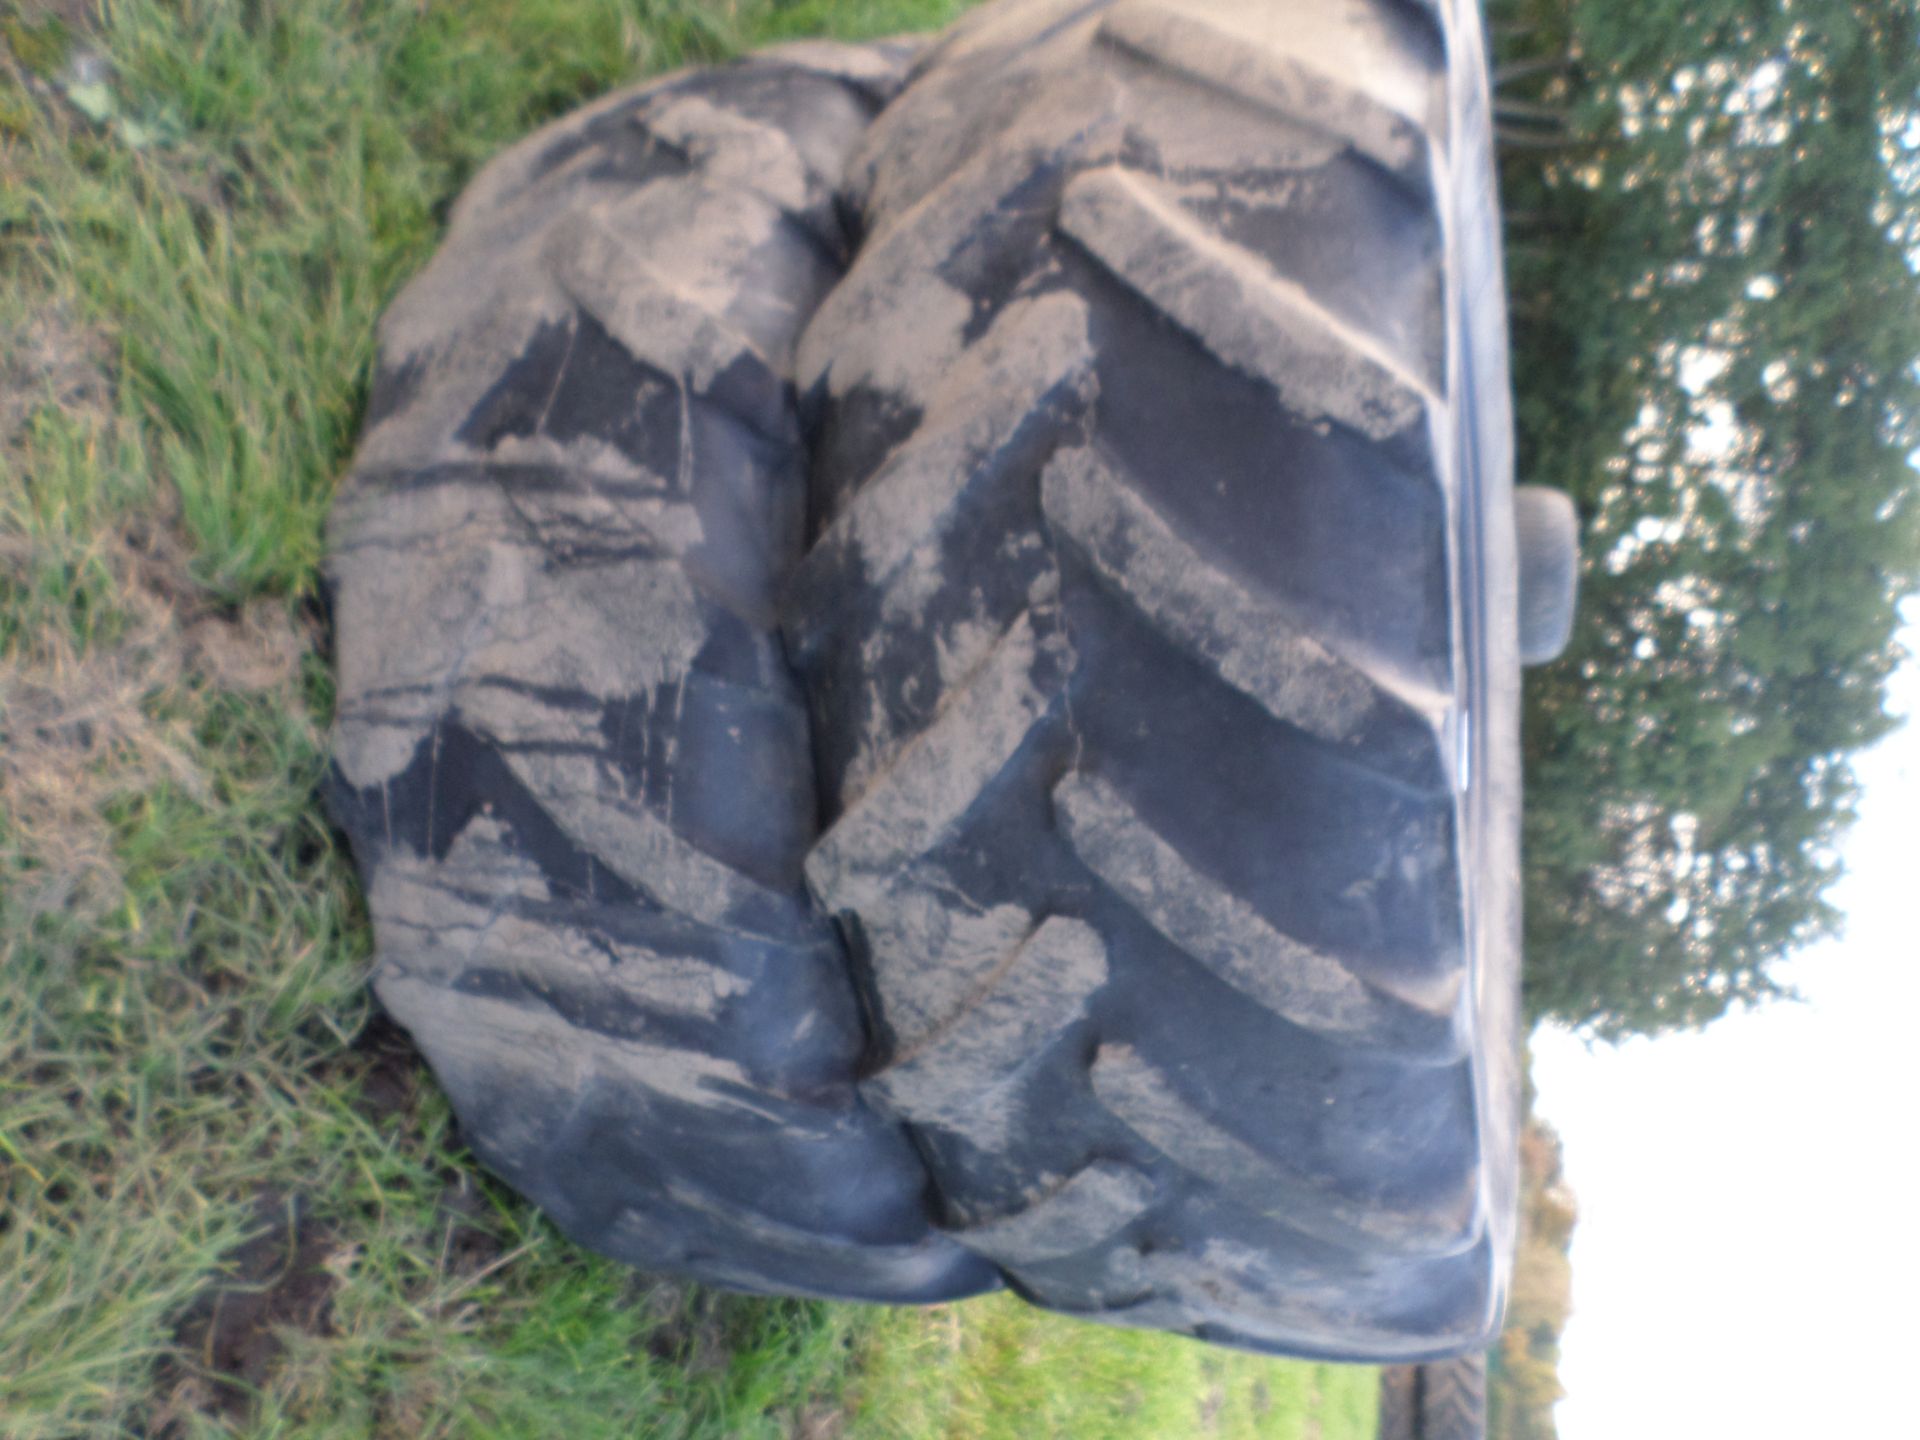 Pair of dual wheel tyres 480/65/28 - Image 2 of 2